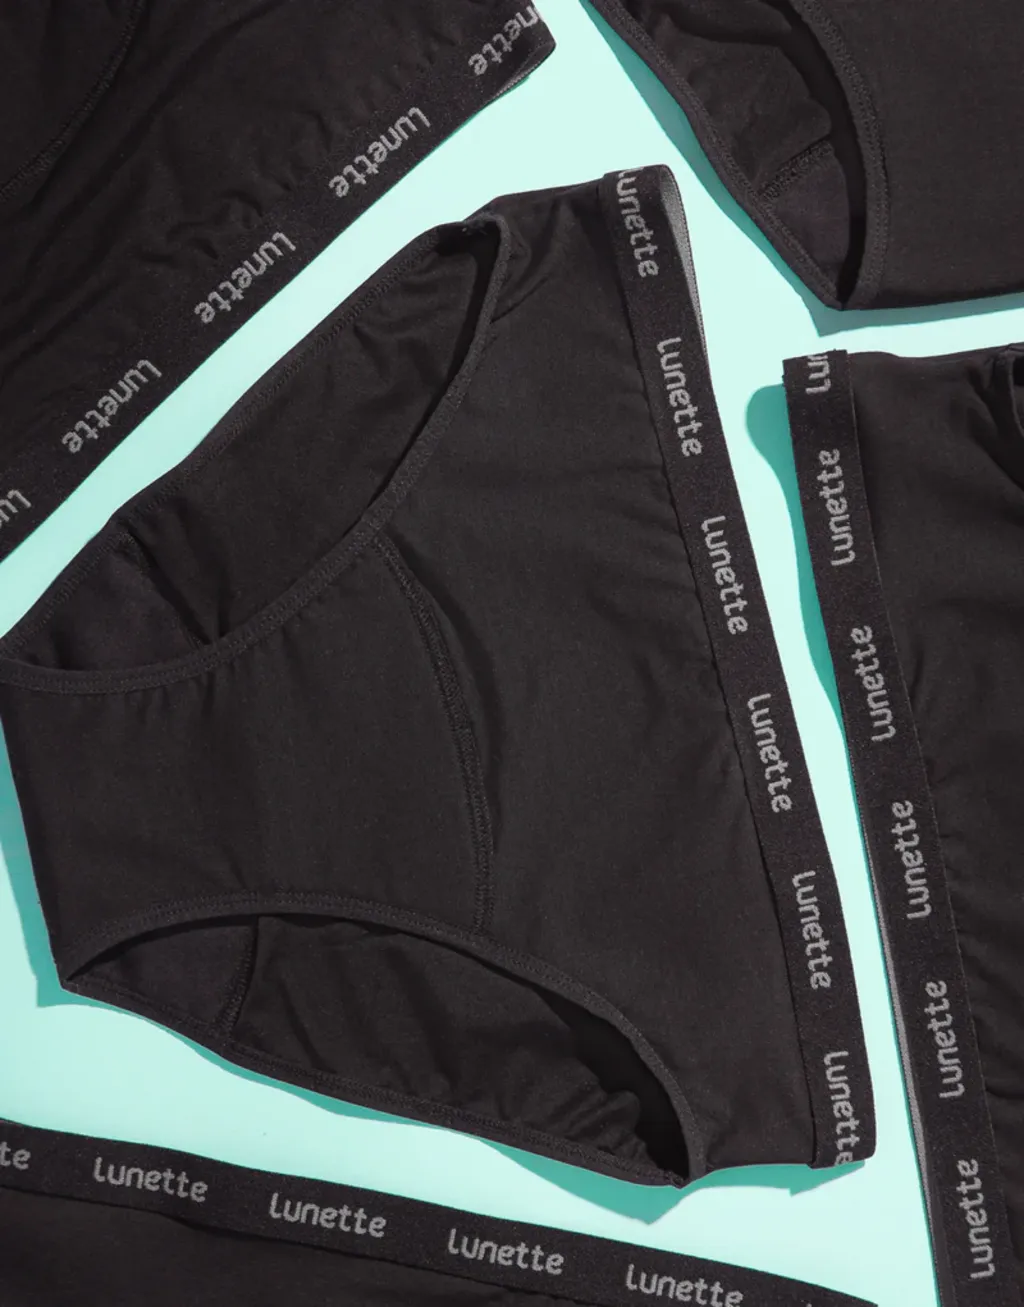 period panty. Period Underwear - Black XXL